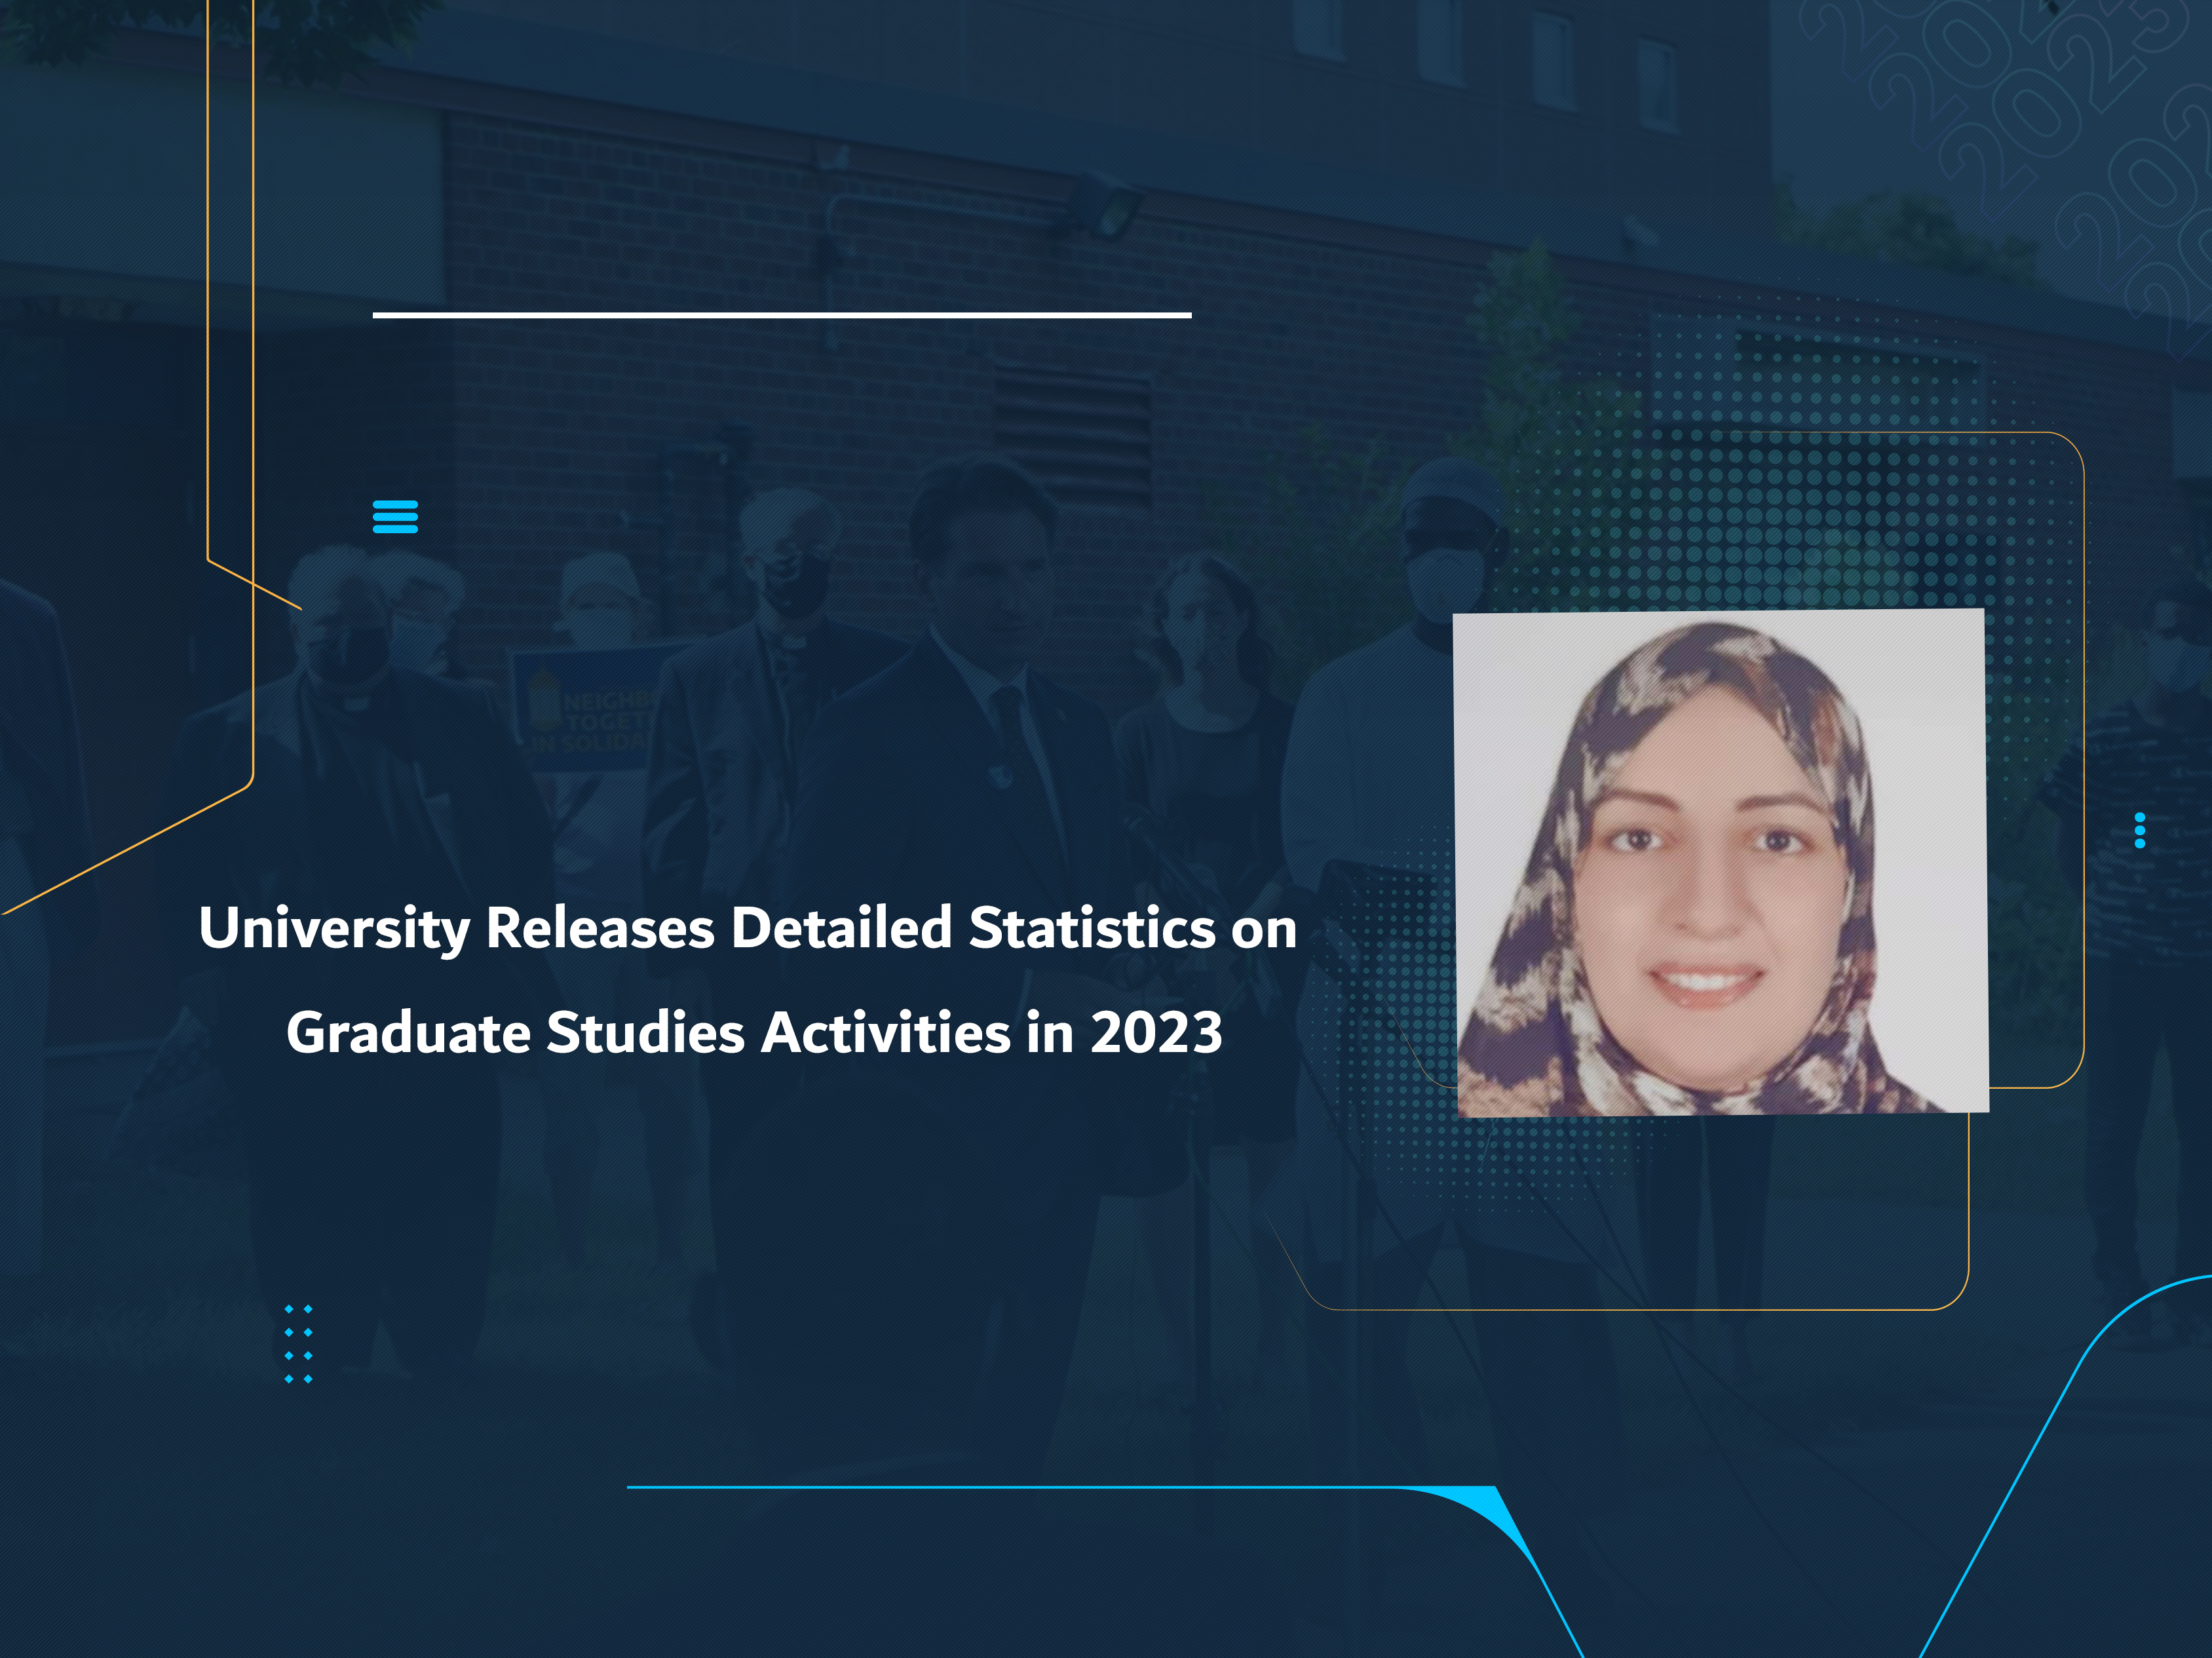 University Releases Detailed Statistics on Graduate Studies Activities in 2023